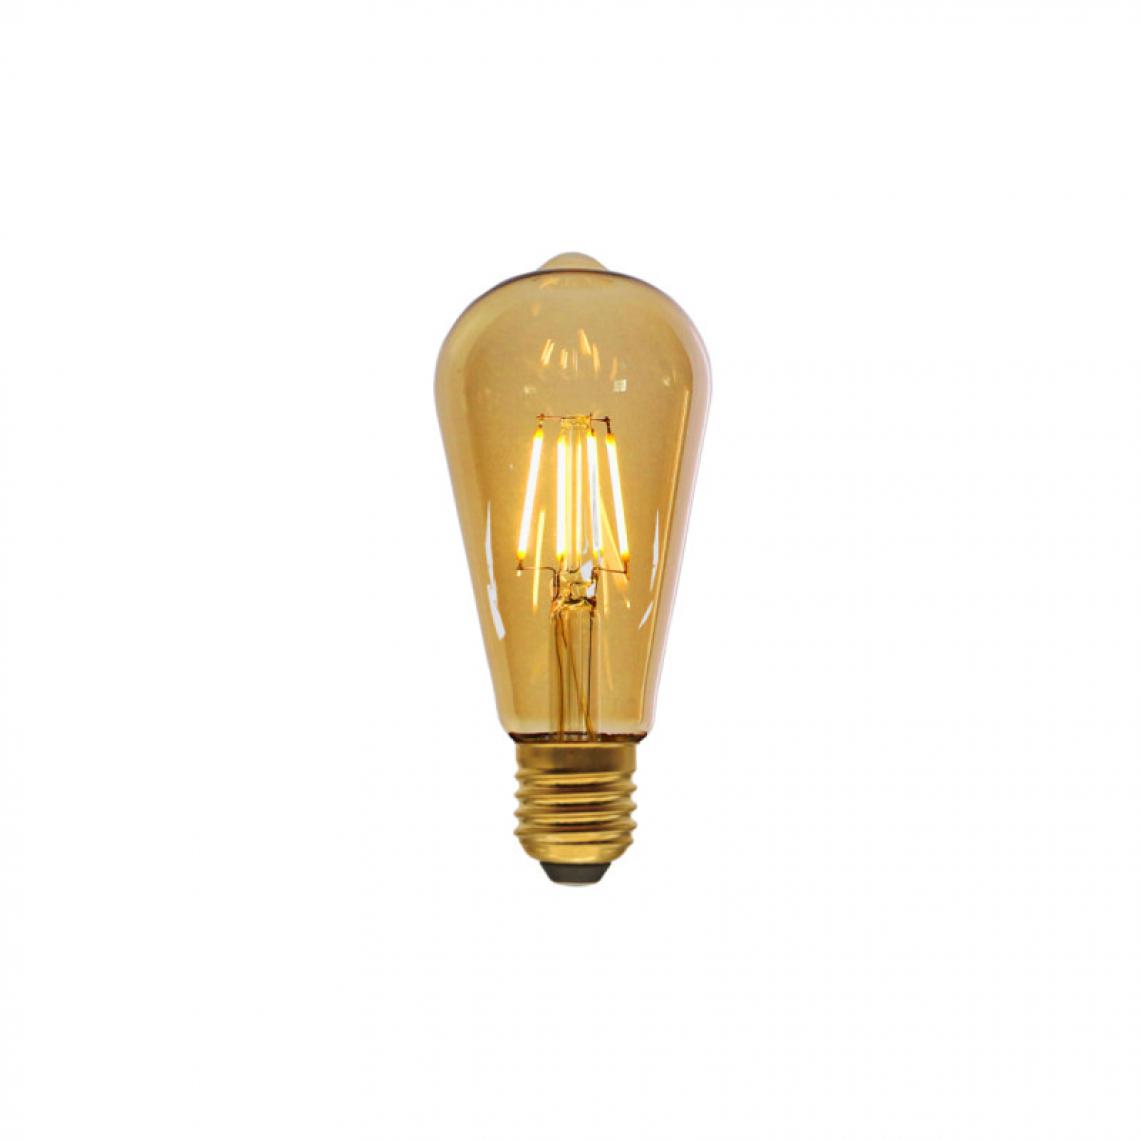 Xxcell - Ampoule LED poire marron XXCELL - 4 W - 200 lumens - 3000 K - E27 - Ampoules LED